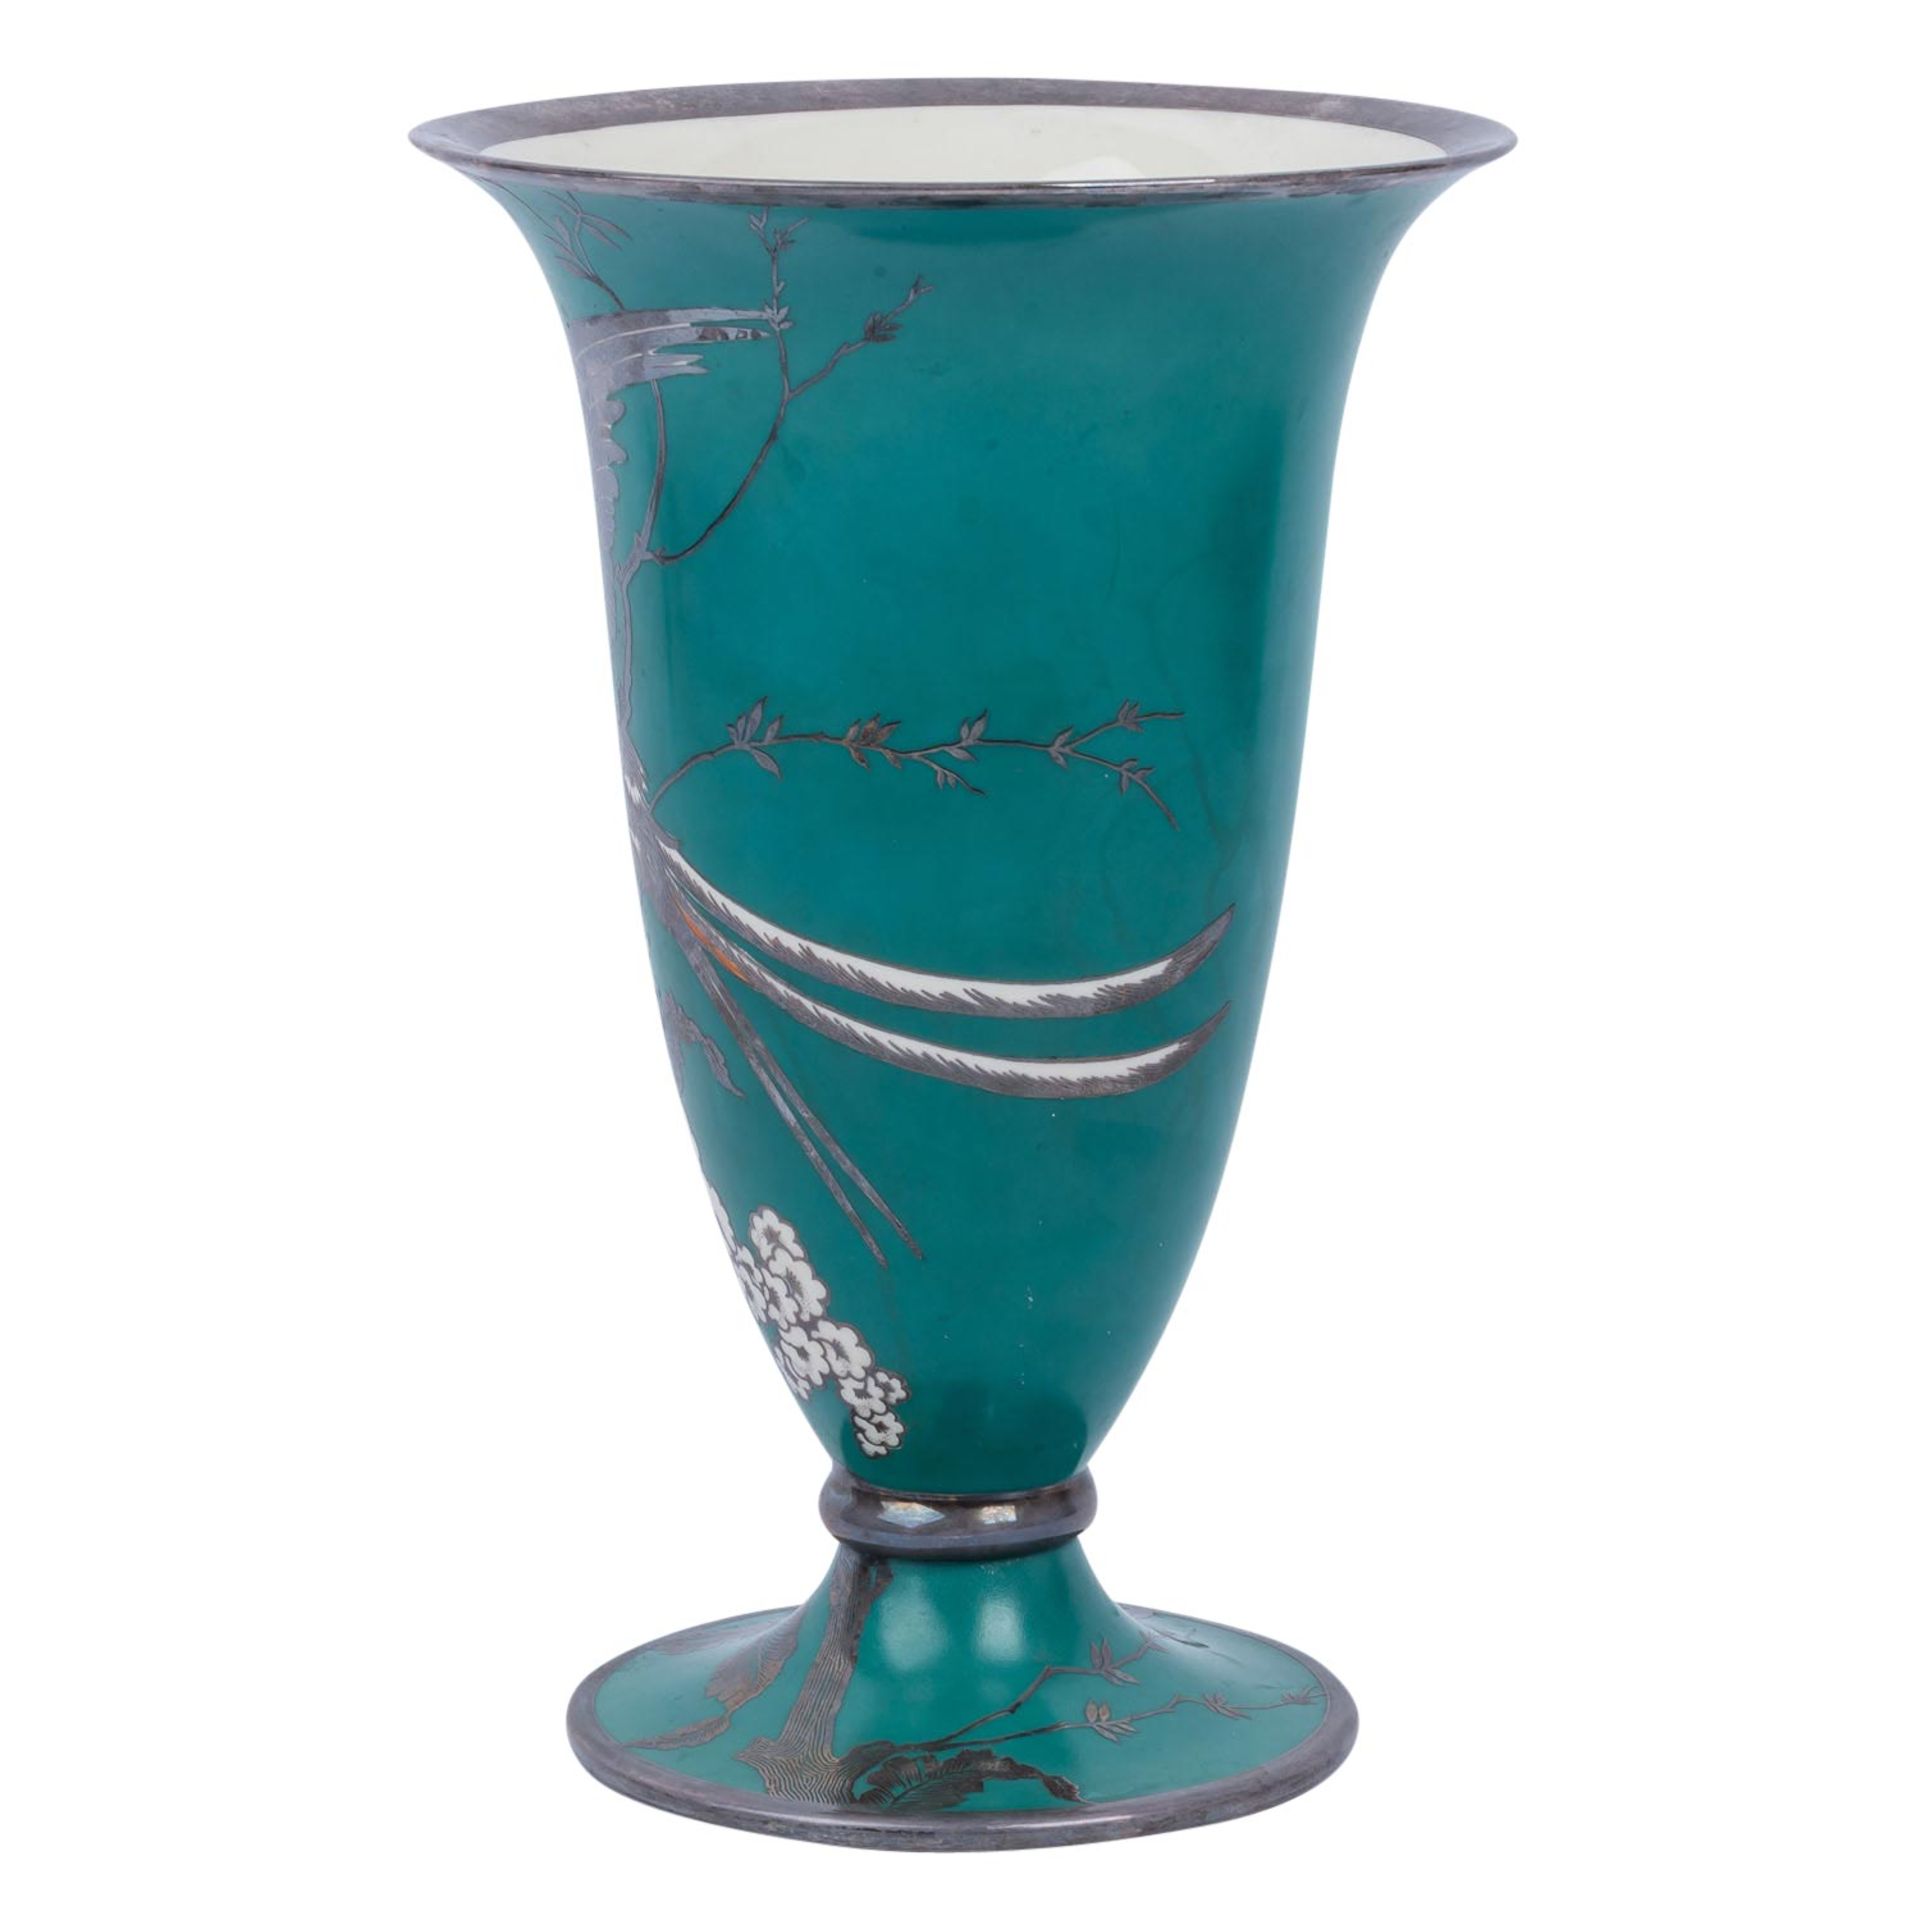 ROSENTHAL Vase mit Silber-Overlay, 1940. - Bild 2 aus 6